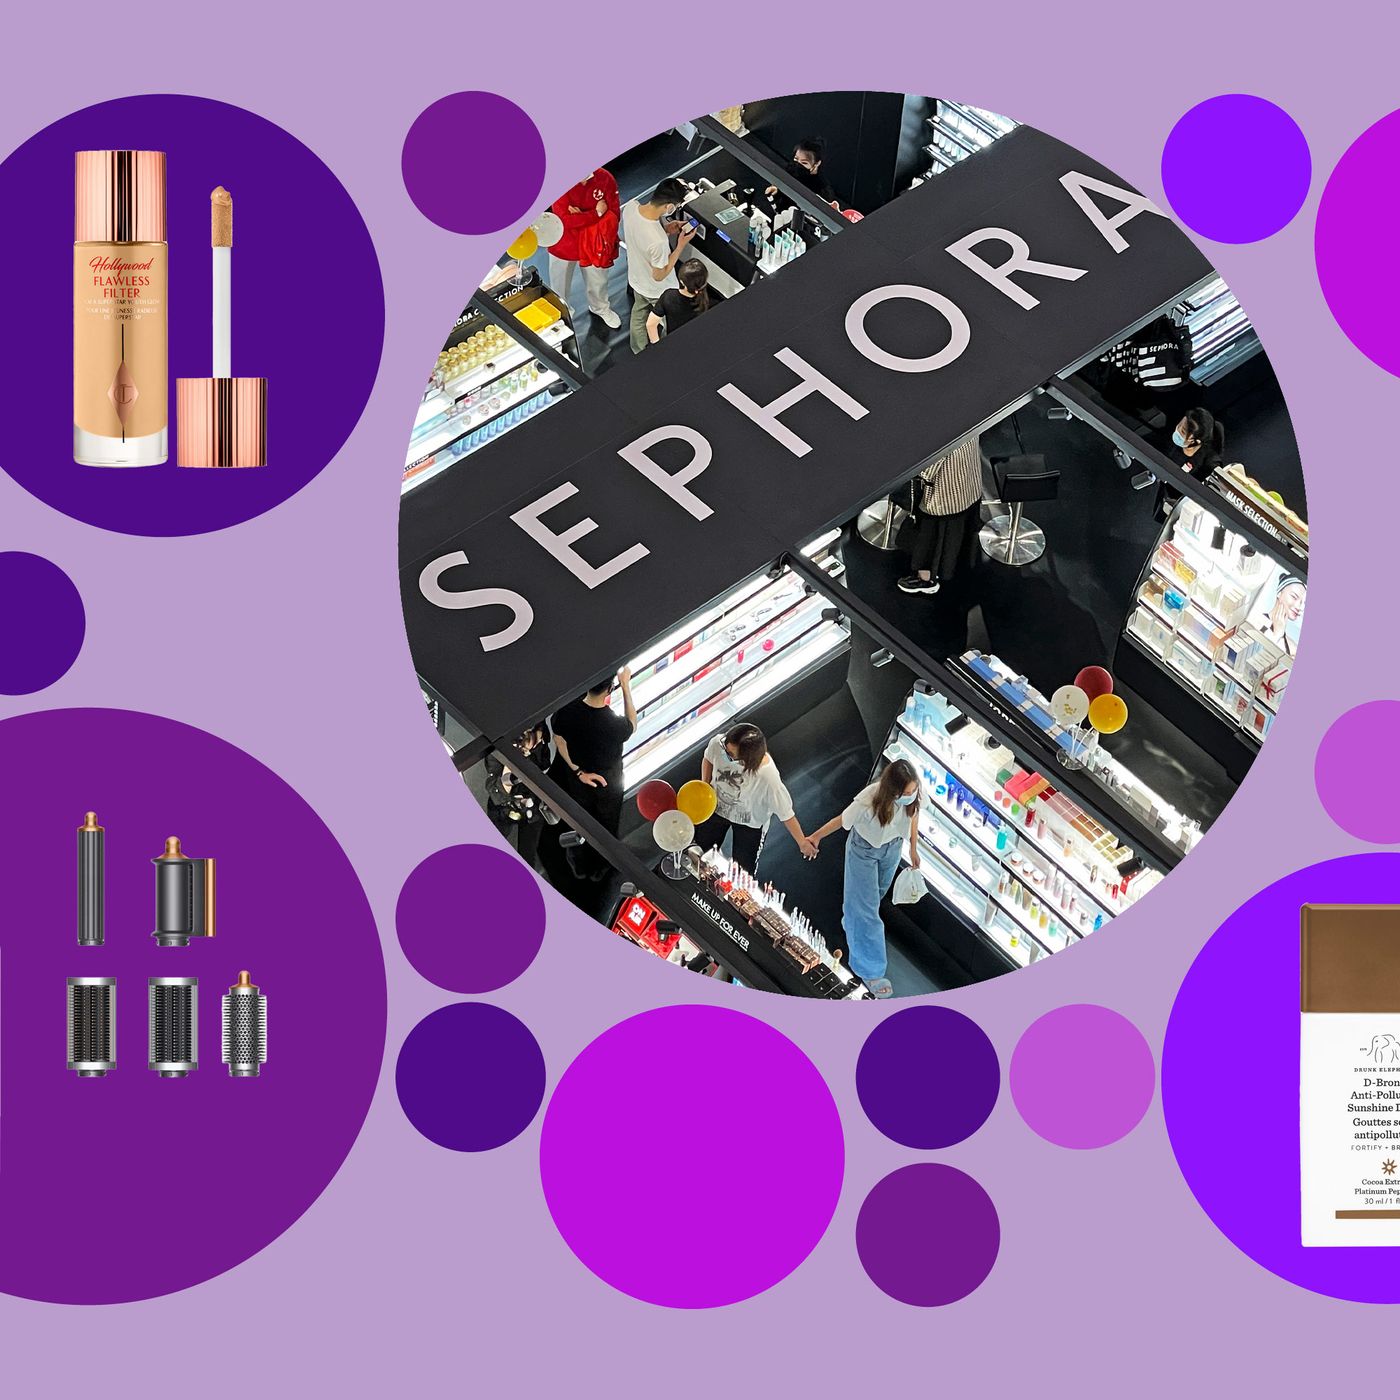 Who owns Sephora? - Zippia